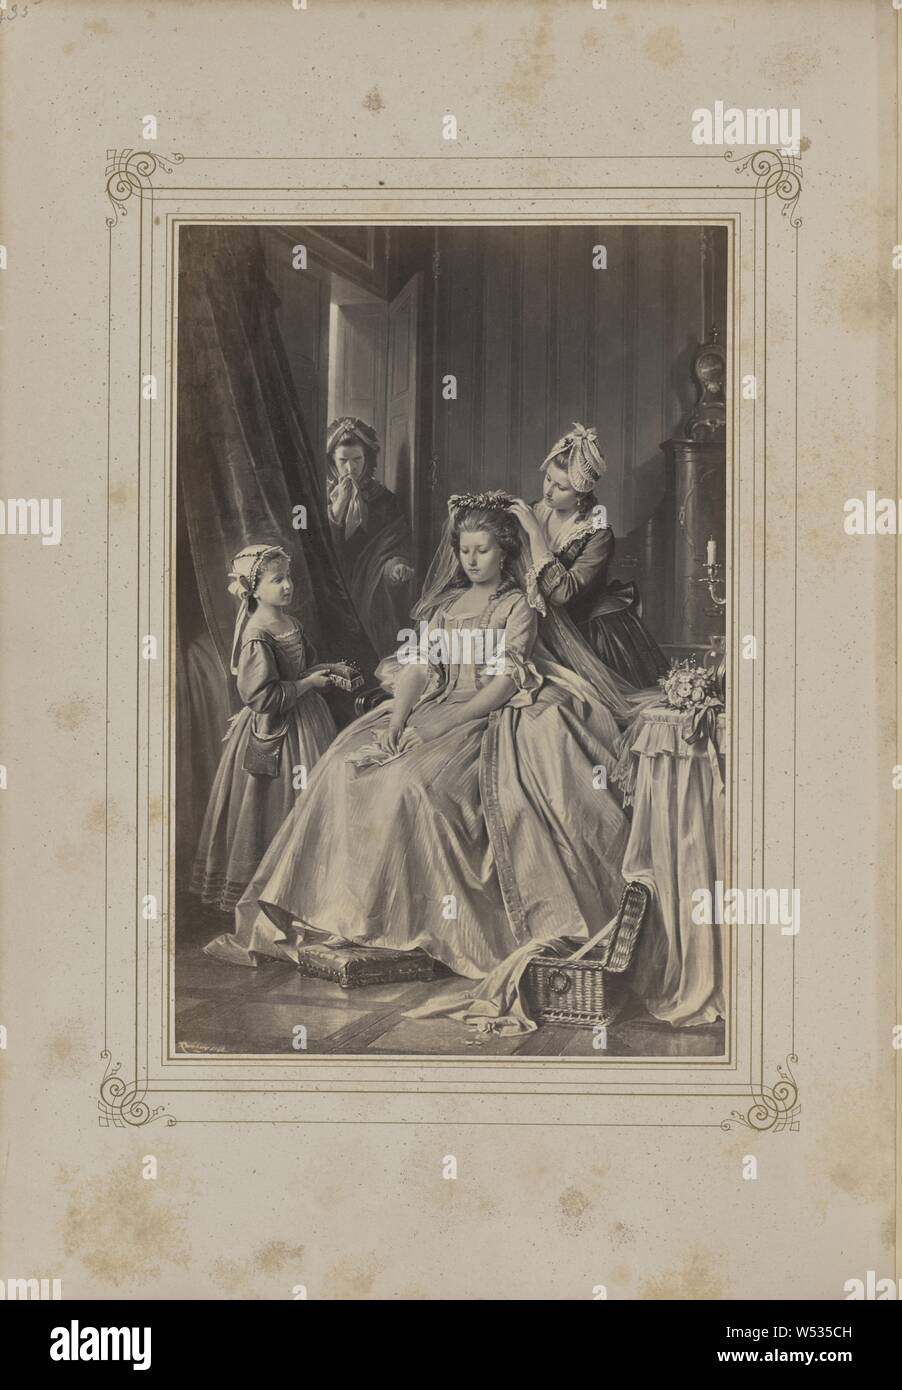 Das Lied von der Glocke, Josef Albert (German, 1825 - 1886), Stuttgart, Germany, 1859–1862, Albumen silver print, 21.5 × 14.2 cm (8 7/16 × 5 9/16 in Stock Photo